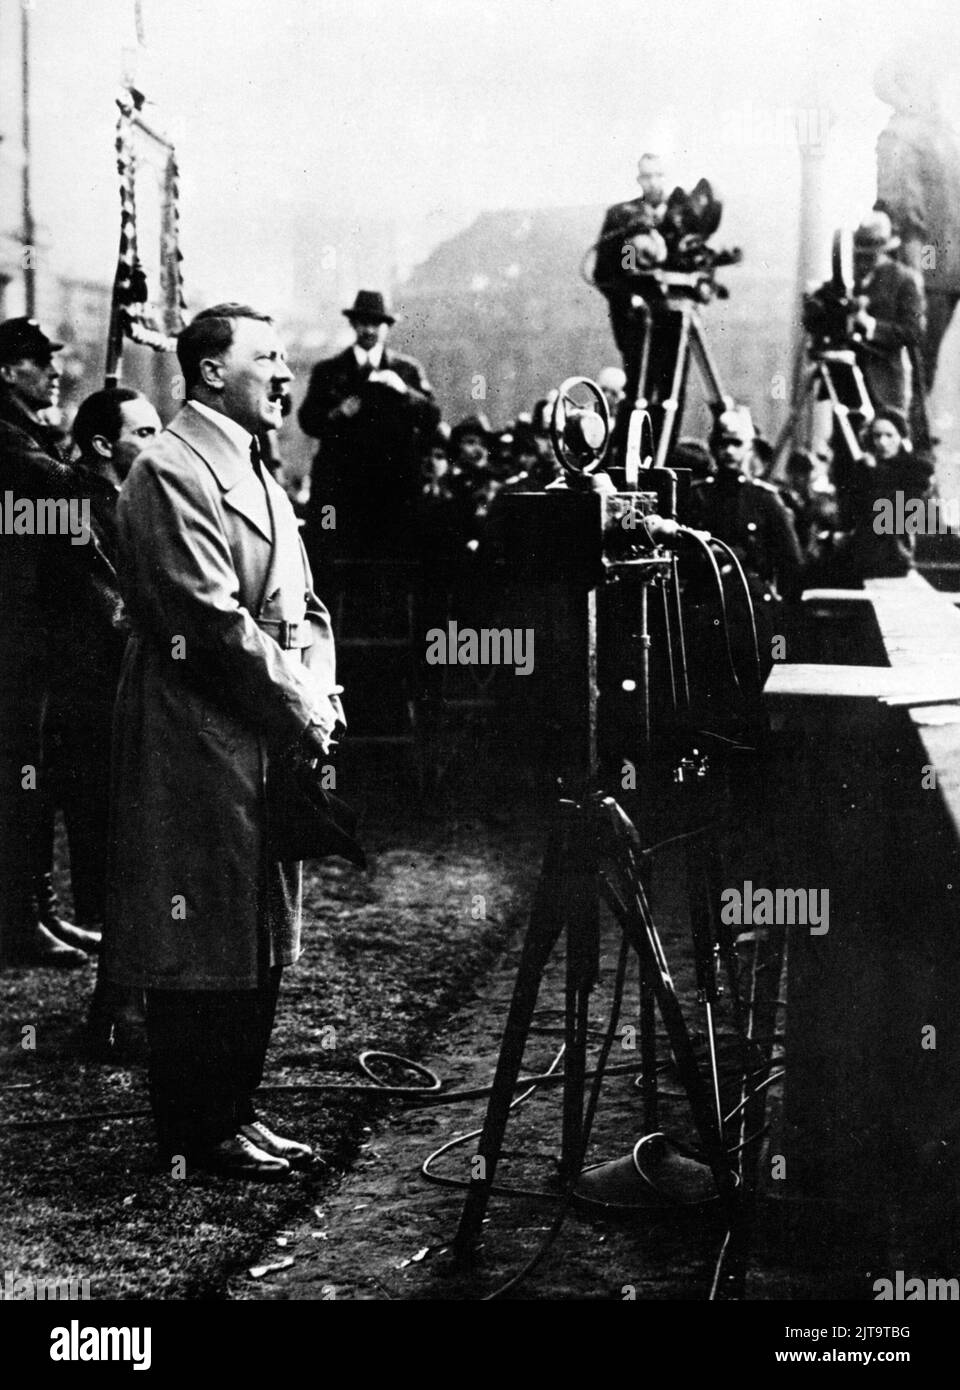 Ein Vintage-Foto um 1933, das den deutschen Nazi-Diktator Adolf Hitler zeigt, der sich während einer Wahlkampfveranstaltung an Menschenmengen wendet Stockfoto